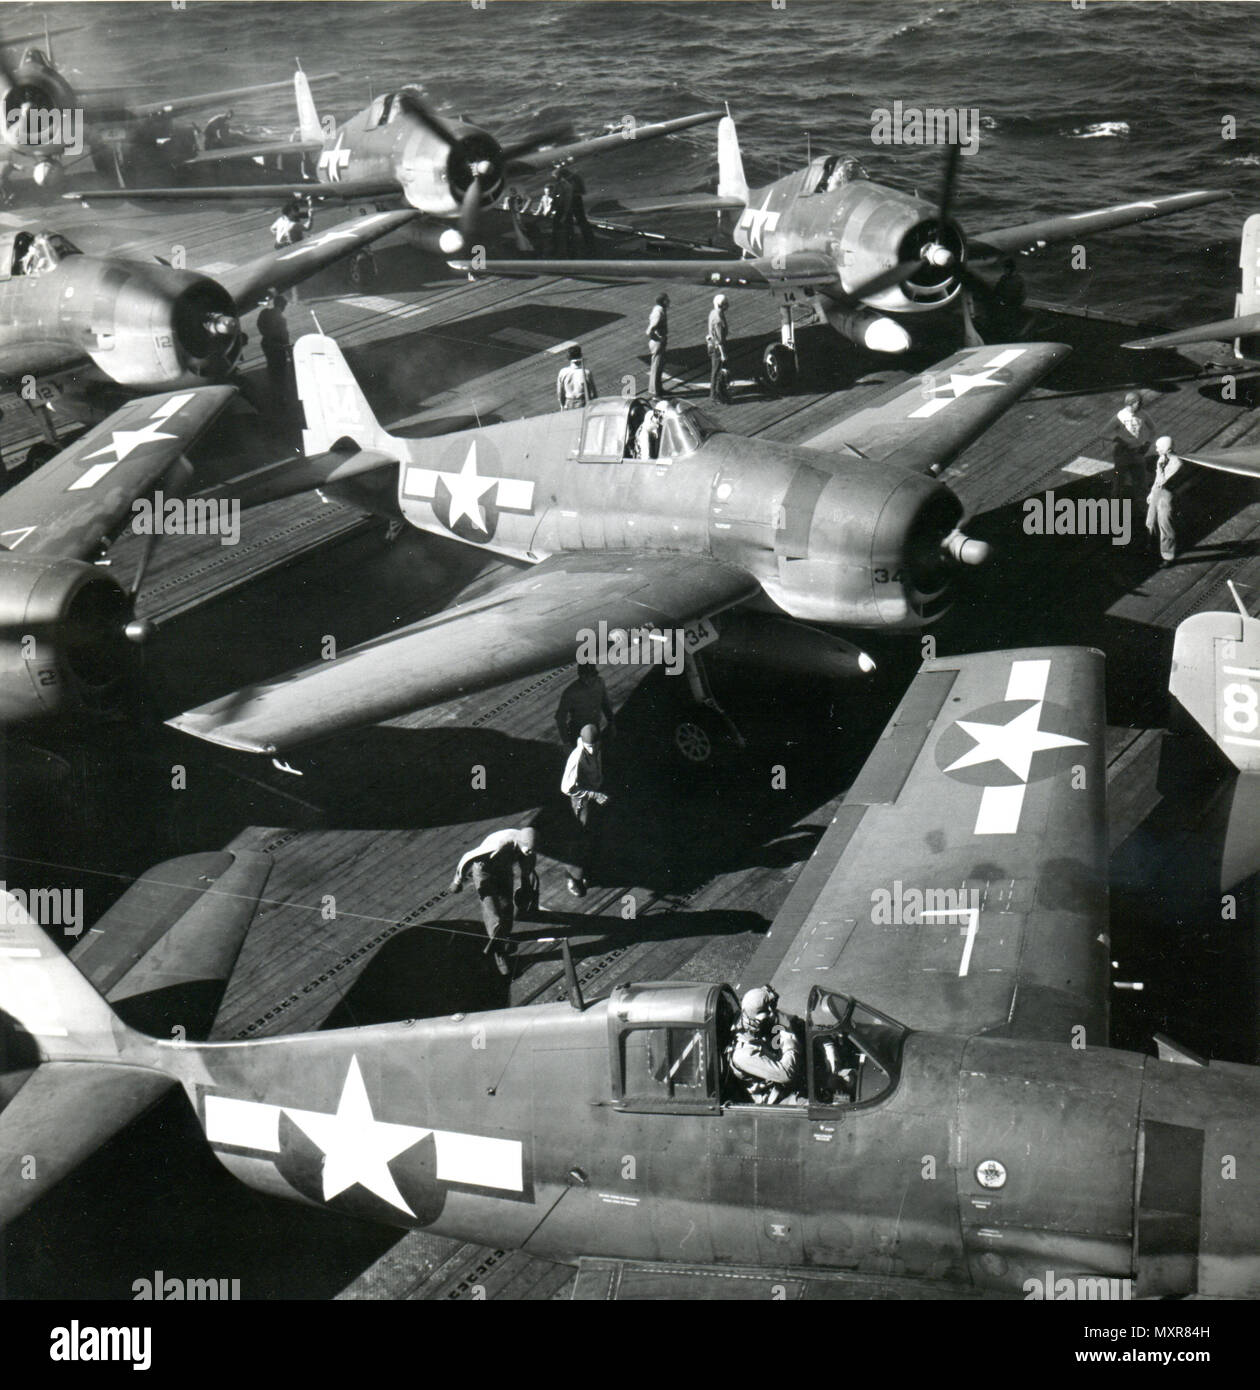 Ottobre 27, 1944 - I PILOTI uomo i vostri piani - Navy piloti in attesa nella loro Grumman HELLCATS a bordo della USS BUNKER HILL dopo l'ordine 'piloti uomo i vostri piani' per un attacco sul giapponese. Foto Stock